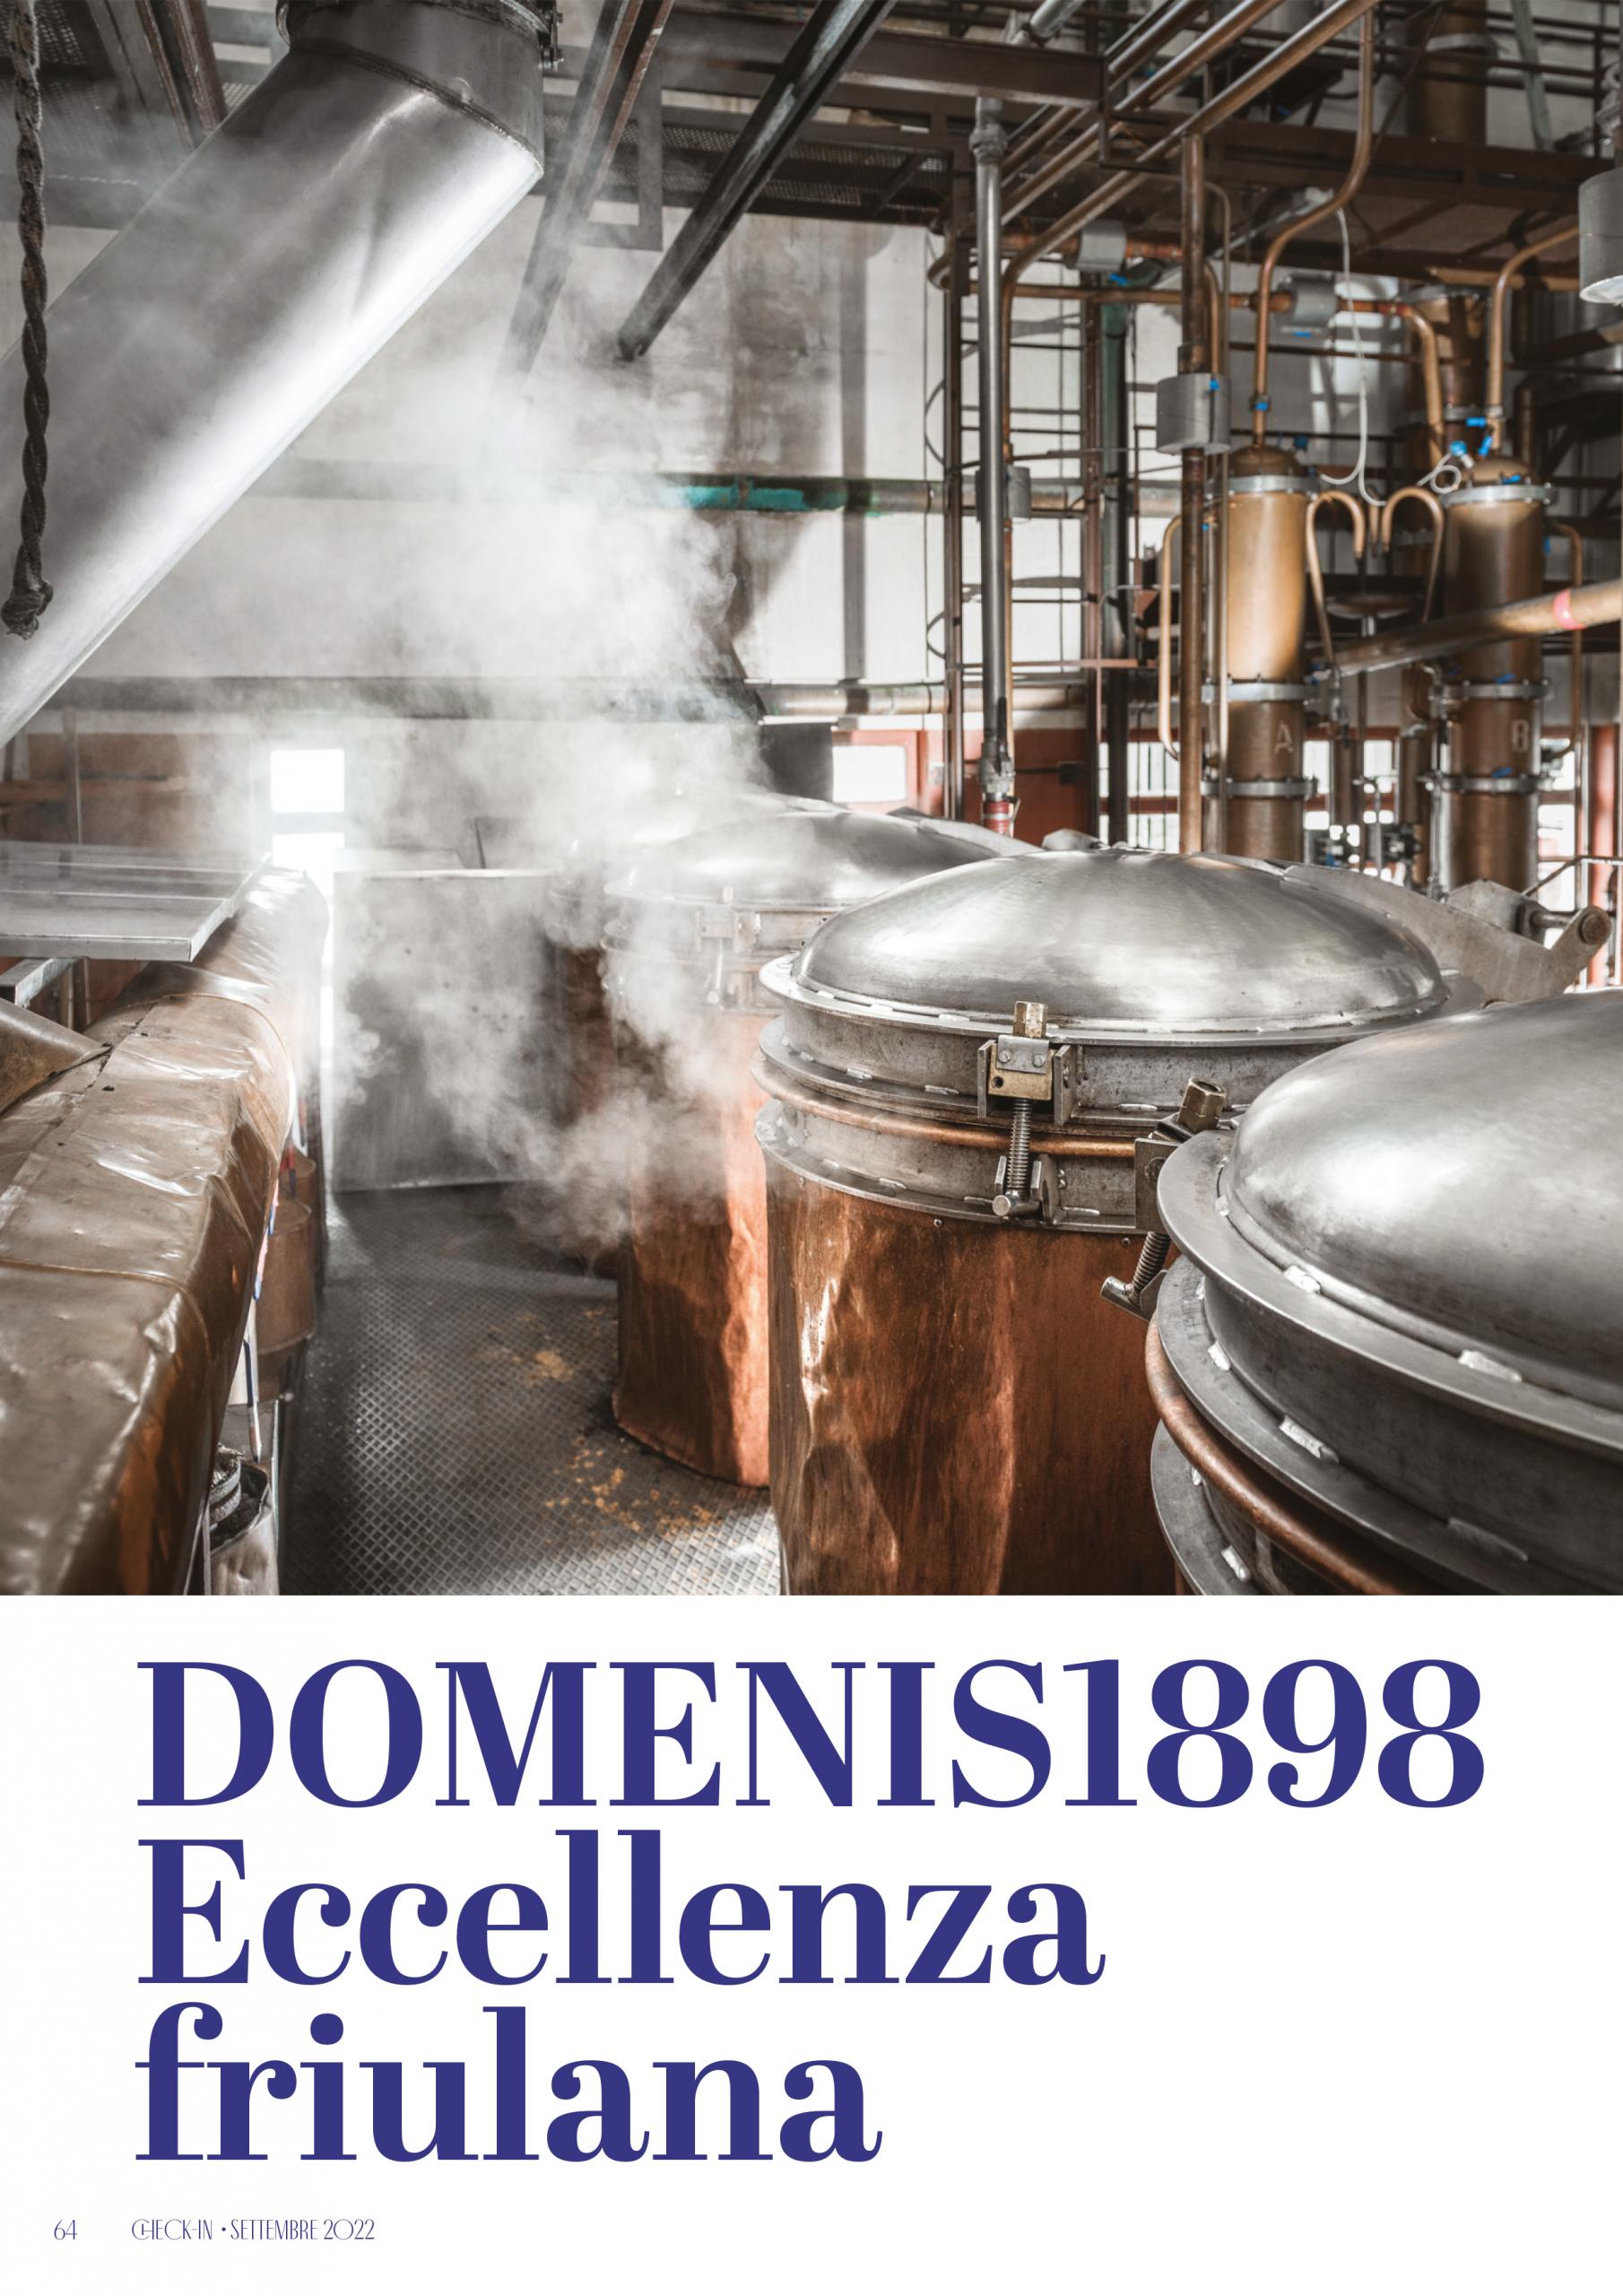 2022 settembre 21: Check-in – DOMENIS1898 Eccellenza friulana